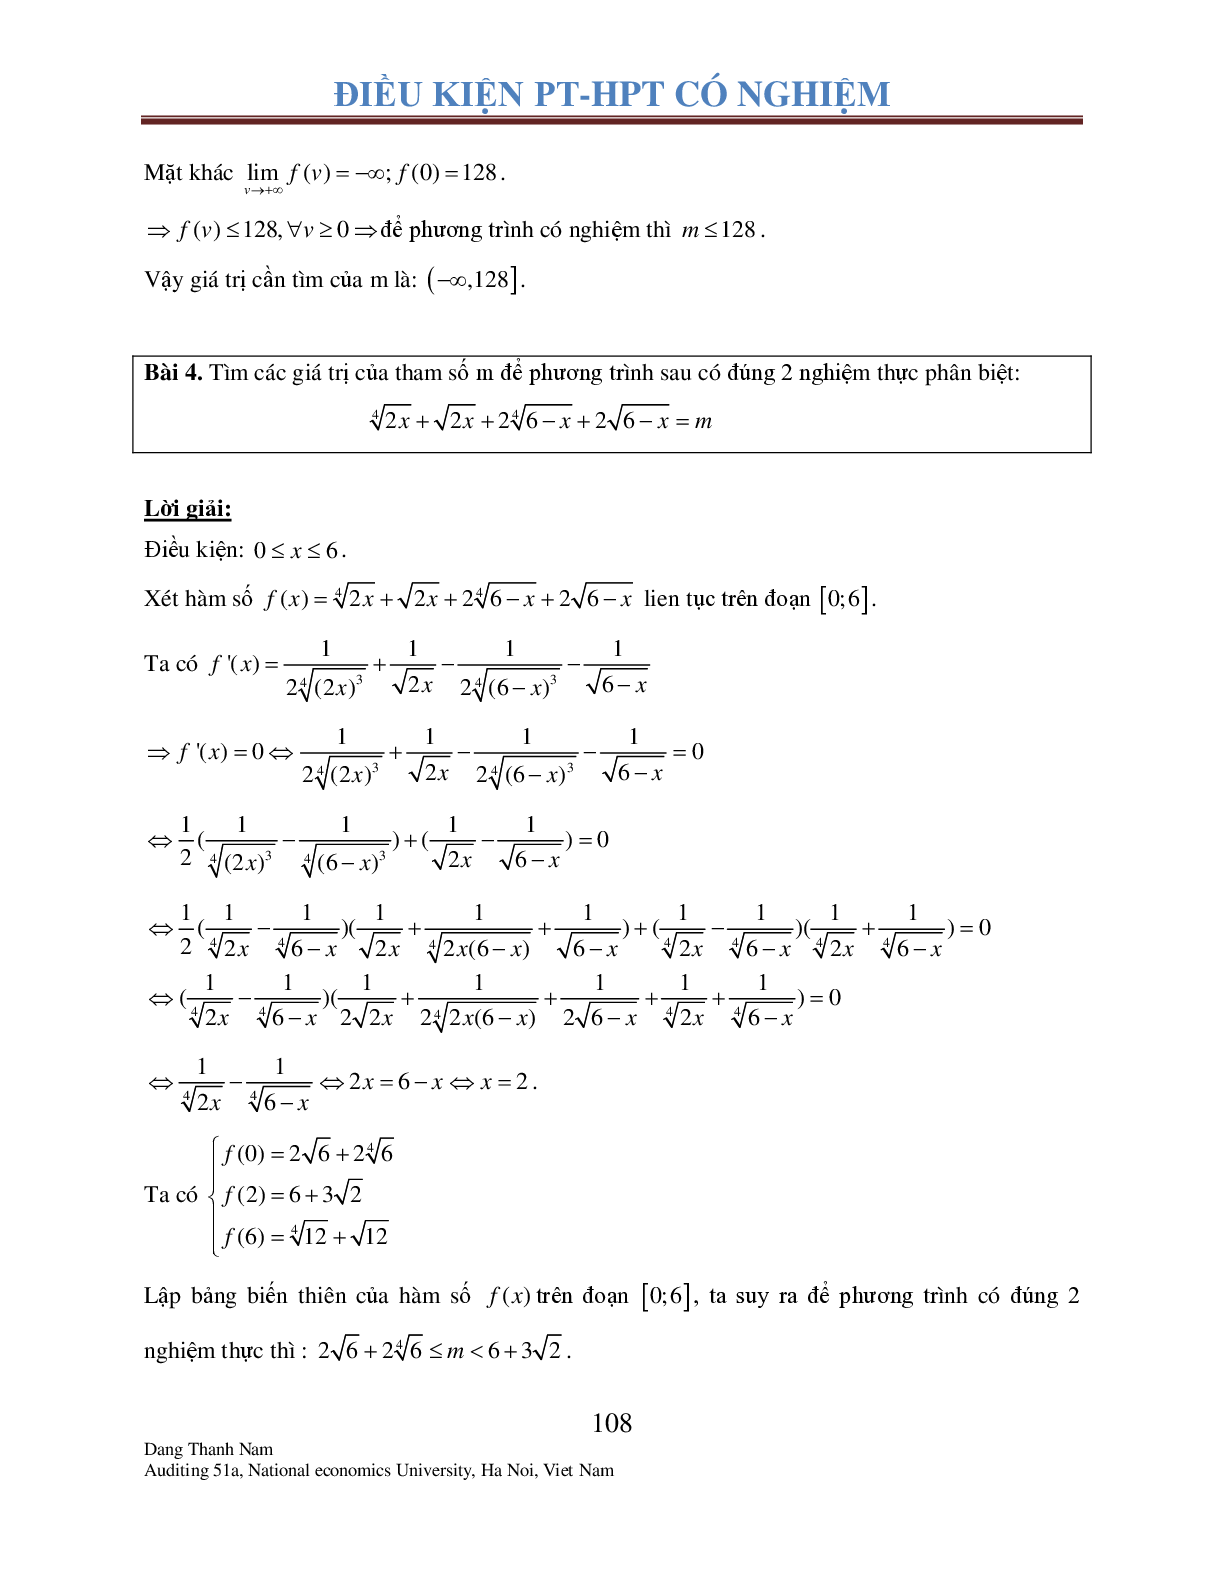 Chuyên đề 2: Tìm điều kiện để Phương trình – Hệ phương trình có nghiệm (trang 7)